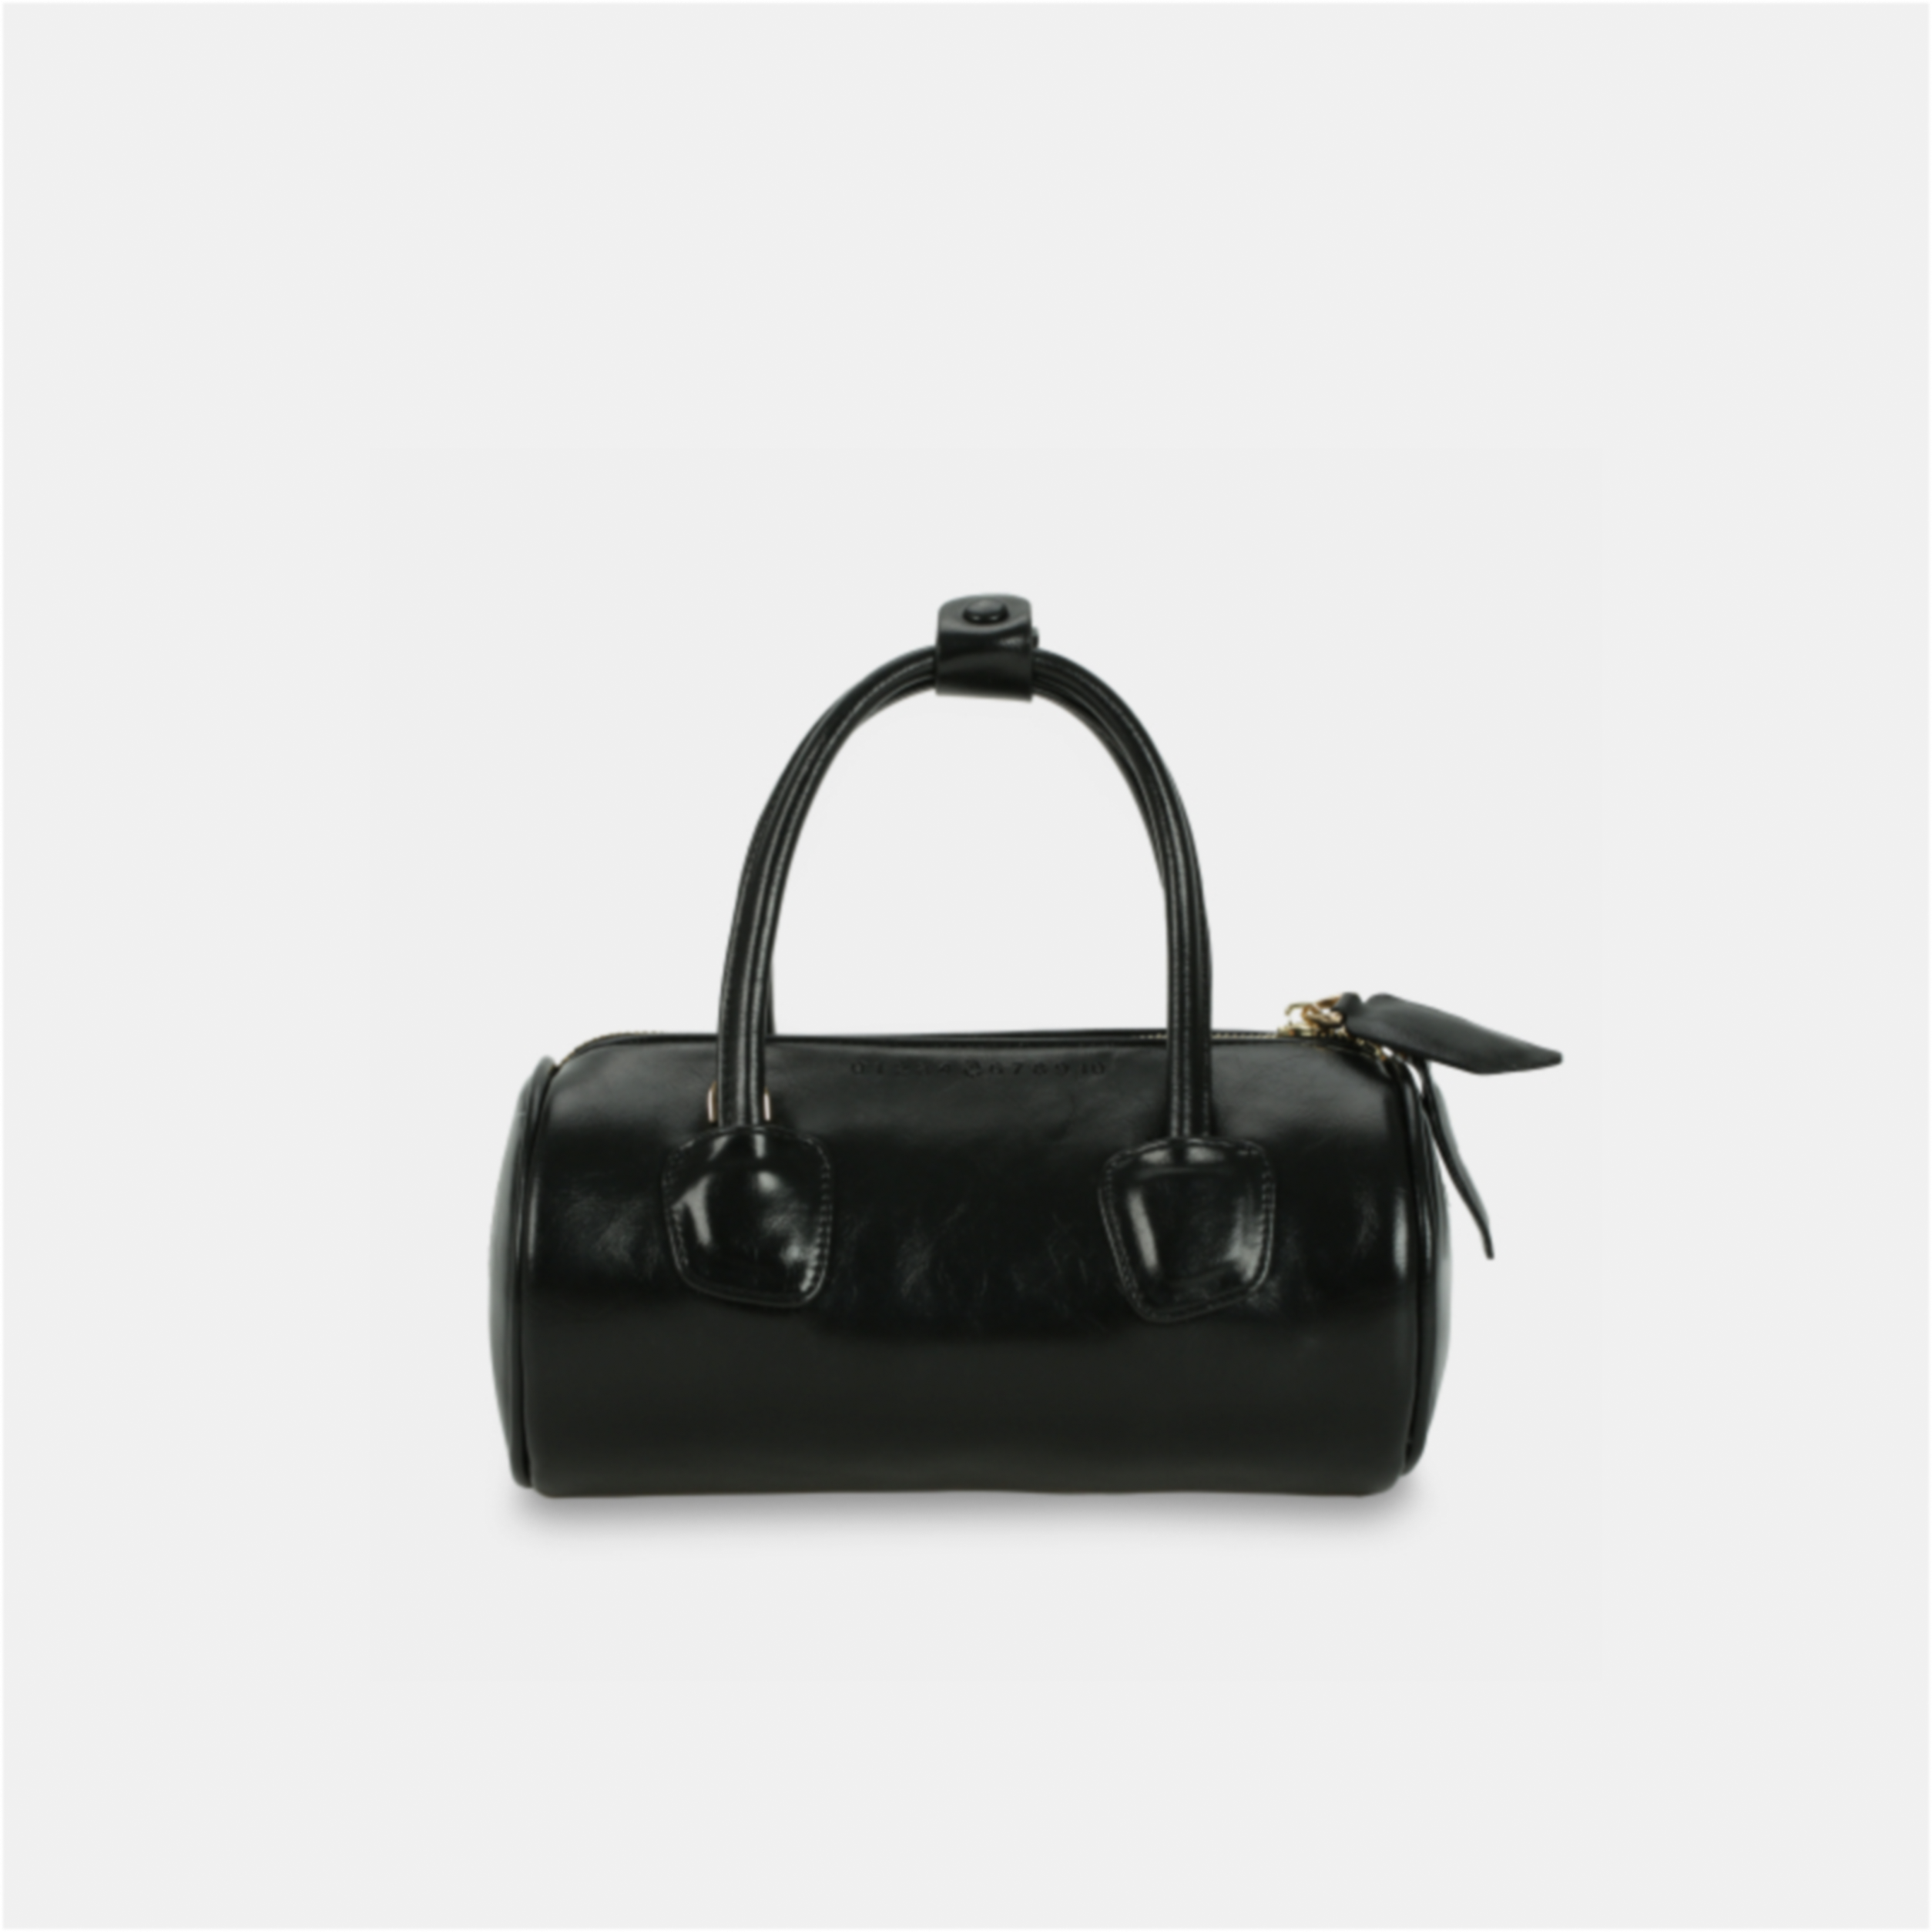 Black ROLL handbag